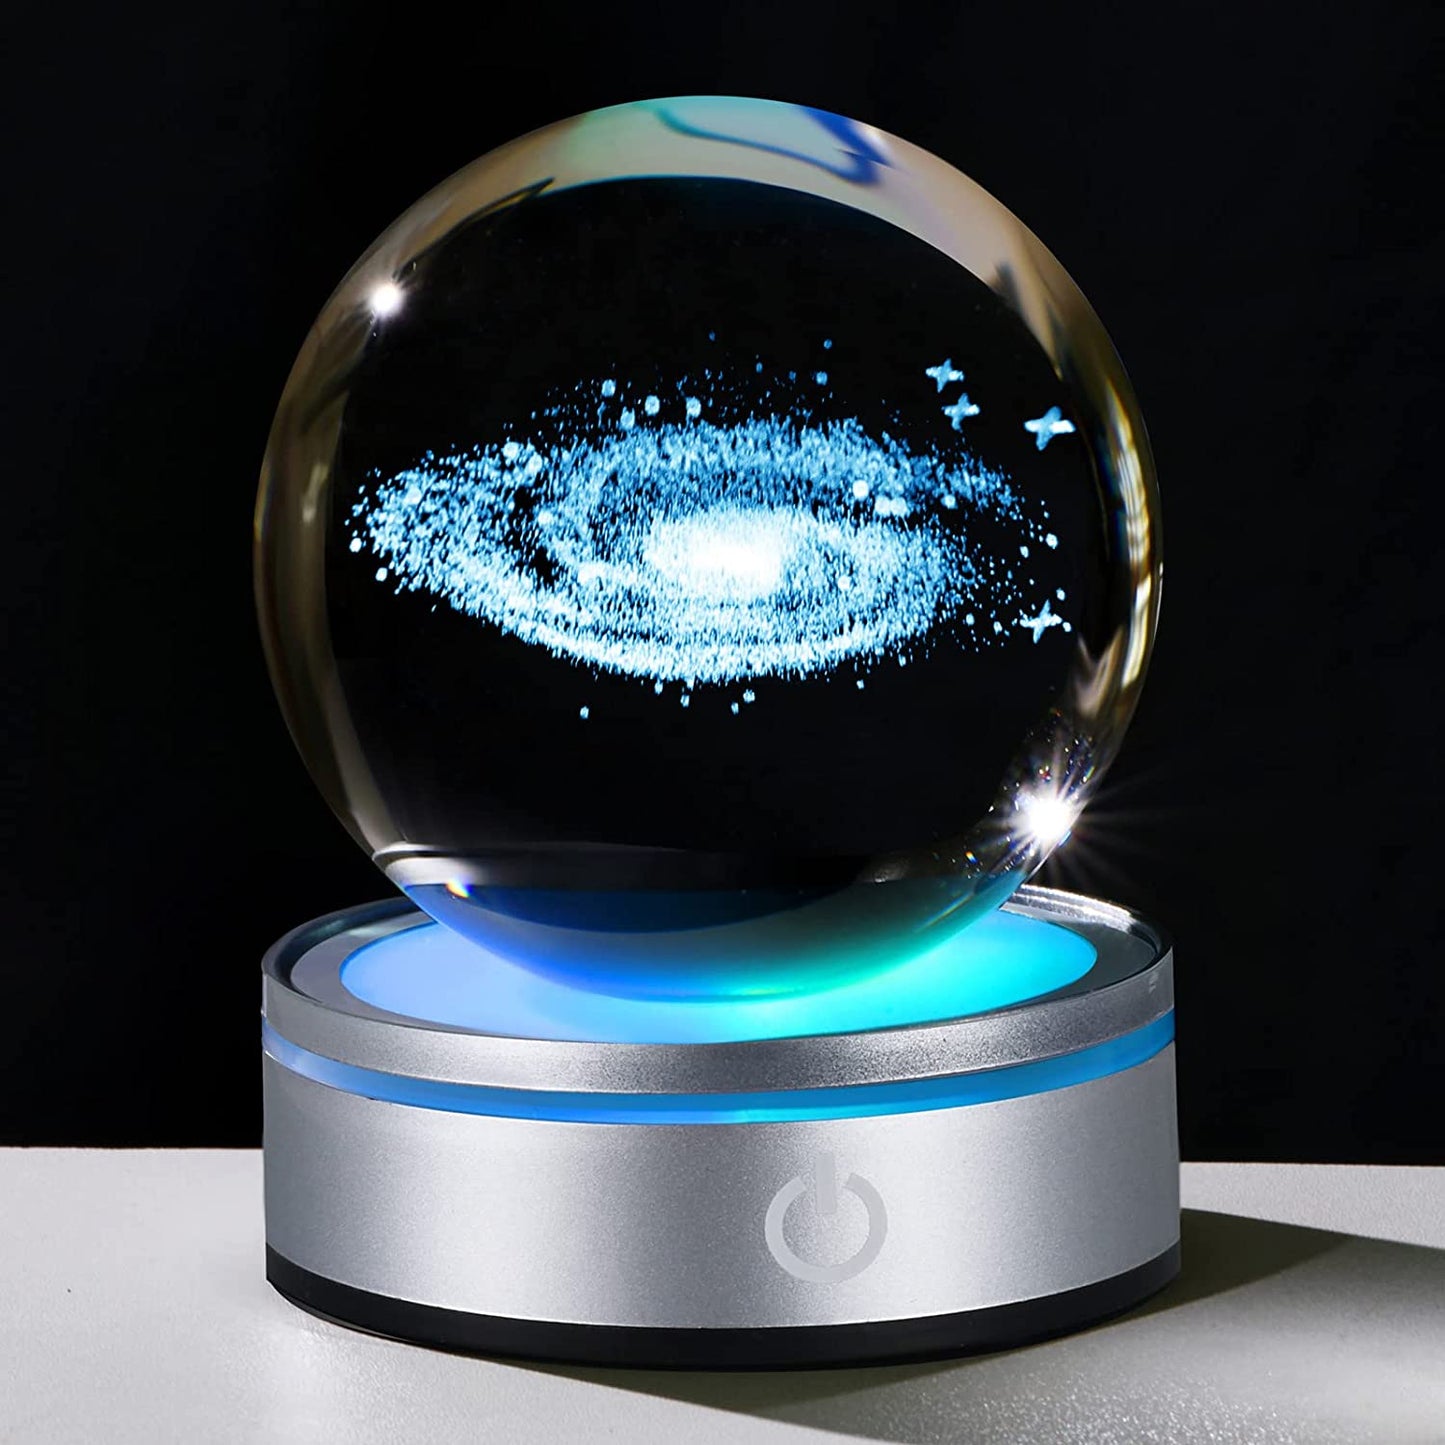 Bola de Cristal Luz de Noche con Proyecciones Interestelares – CosmoSphere